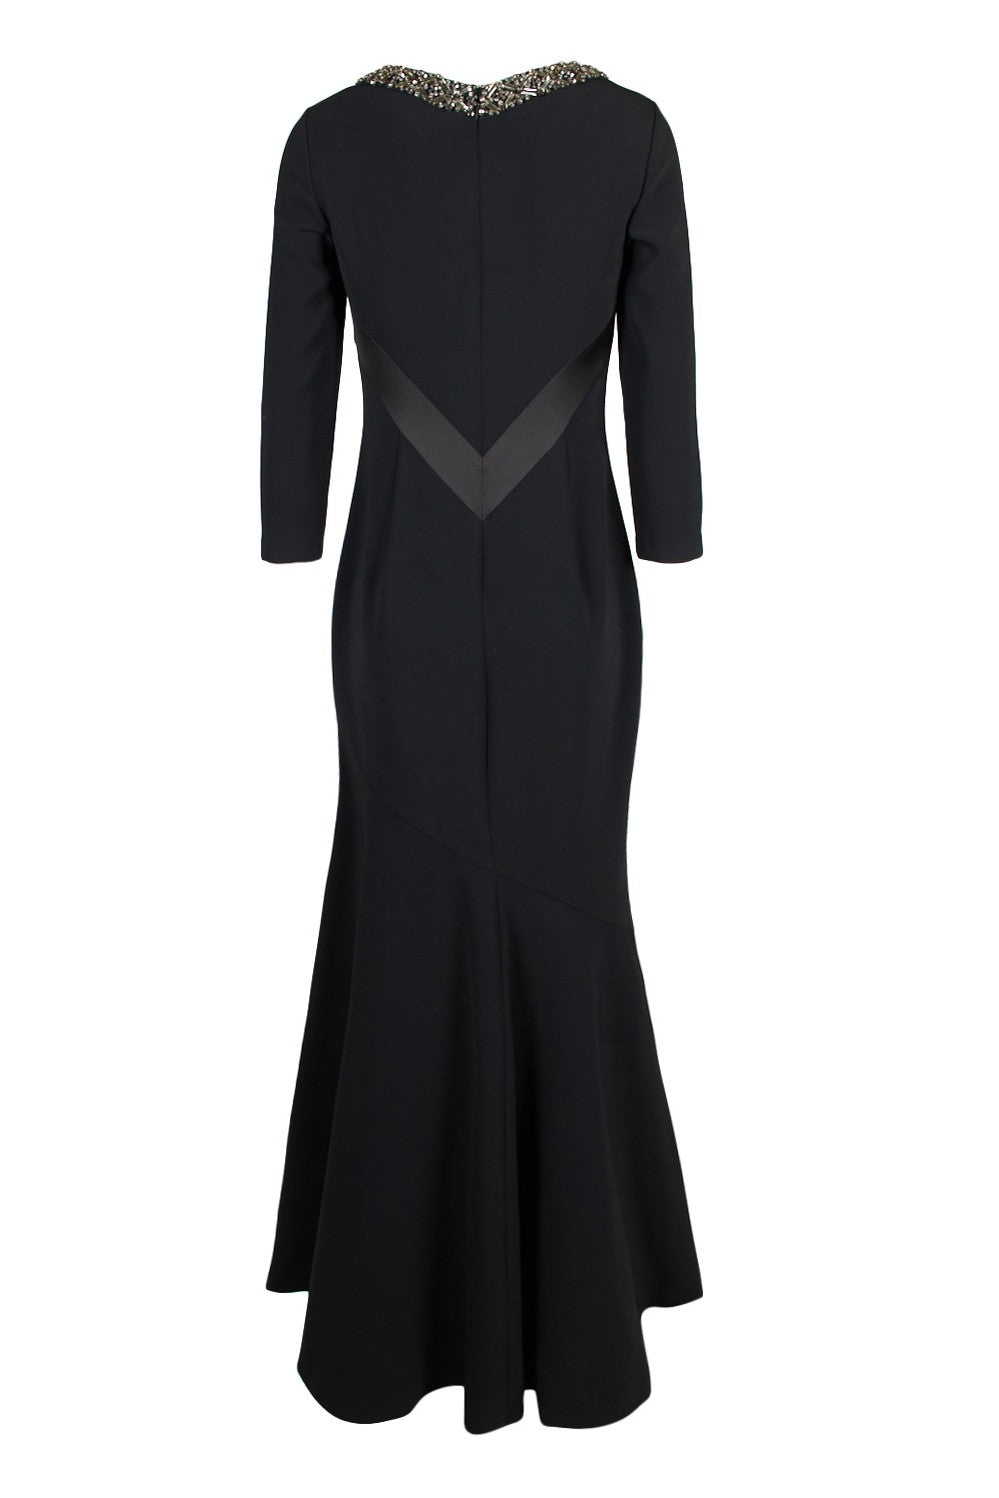 Theia 883890 3/4 Sleeve V-Neck Dress - Black